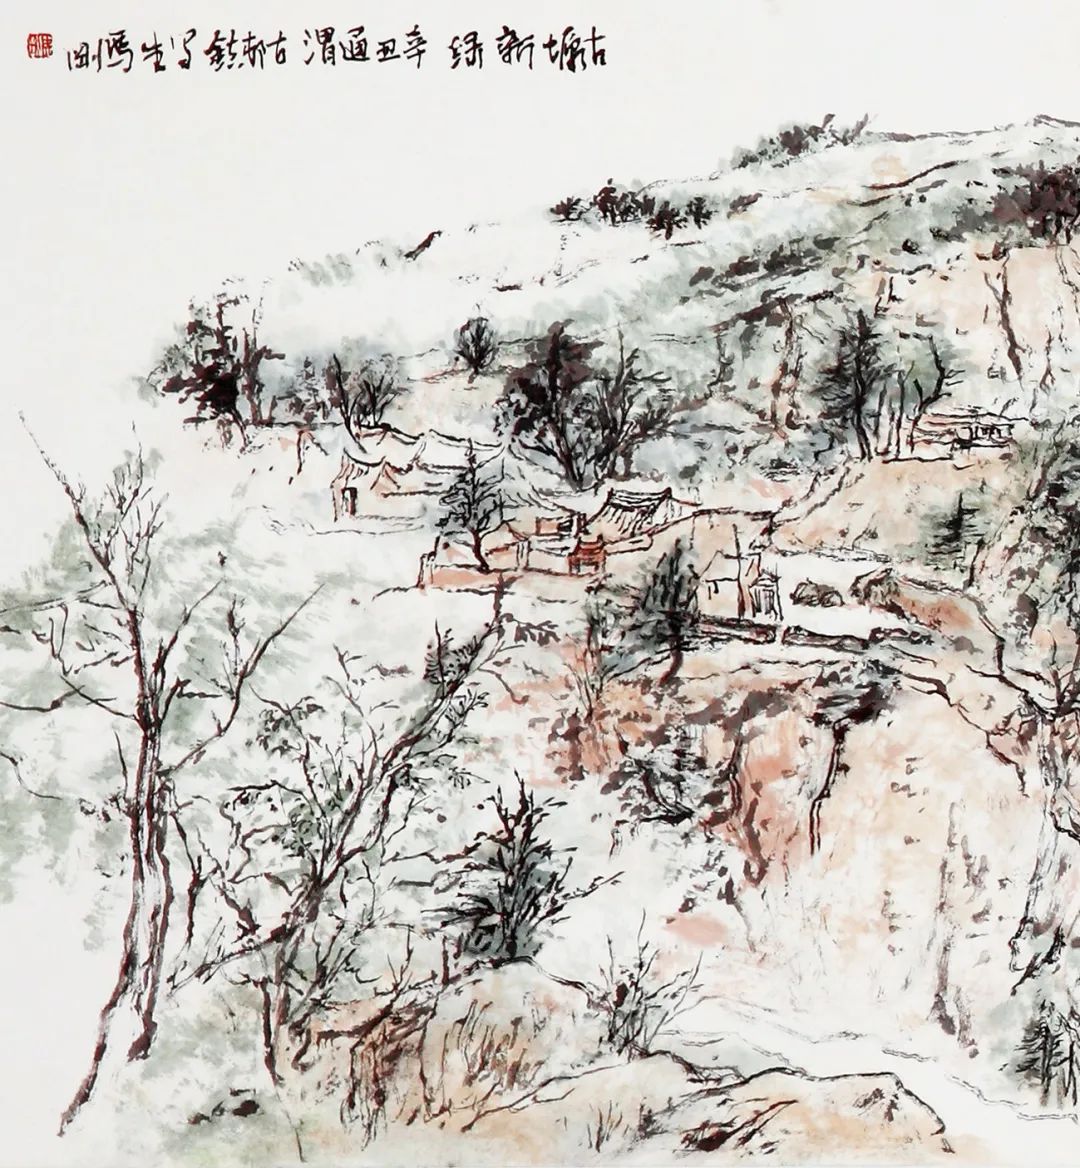 汉唐文化气象 雄浑苍劲笔墨——著名画家马刚的艺术情怀